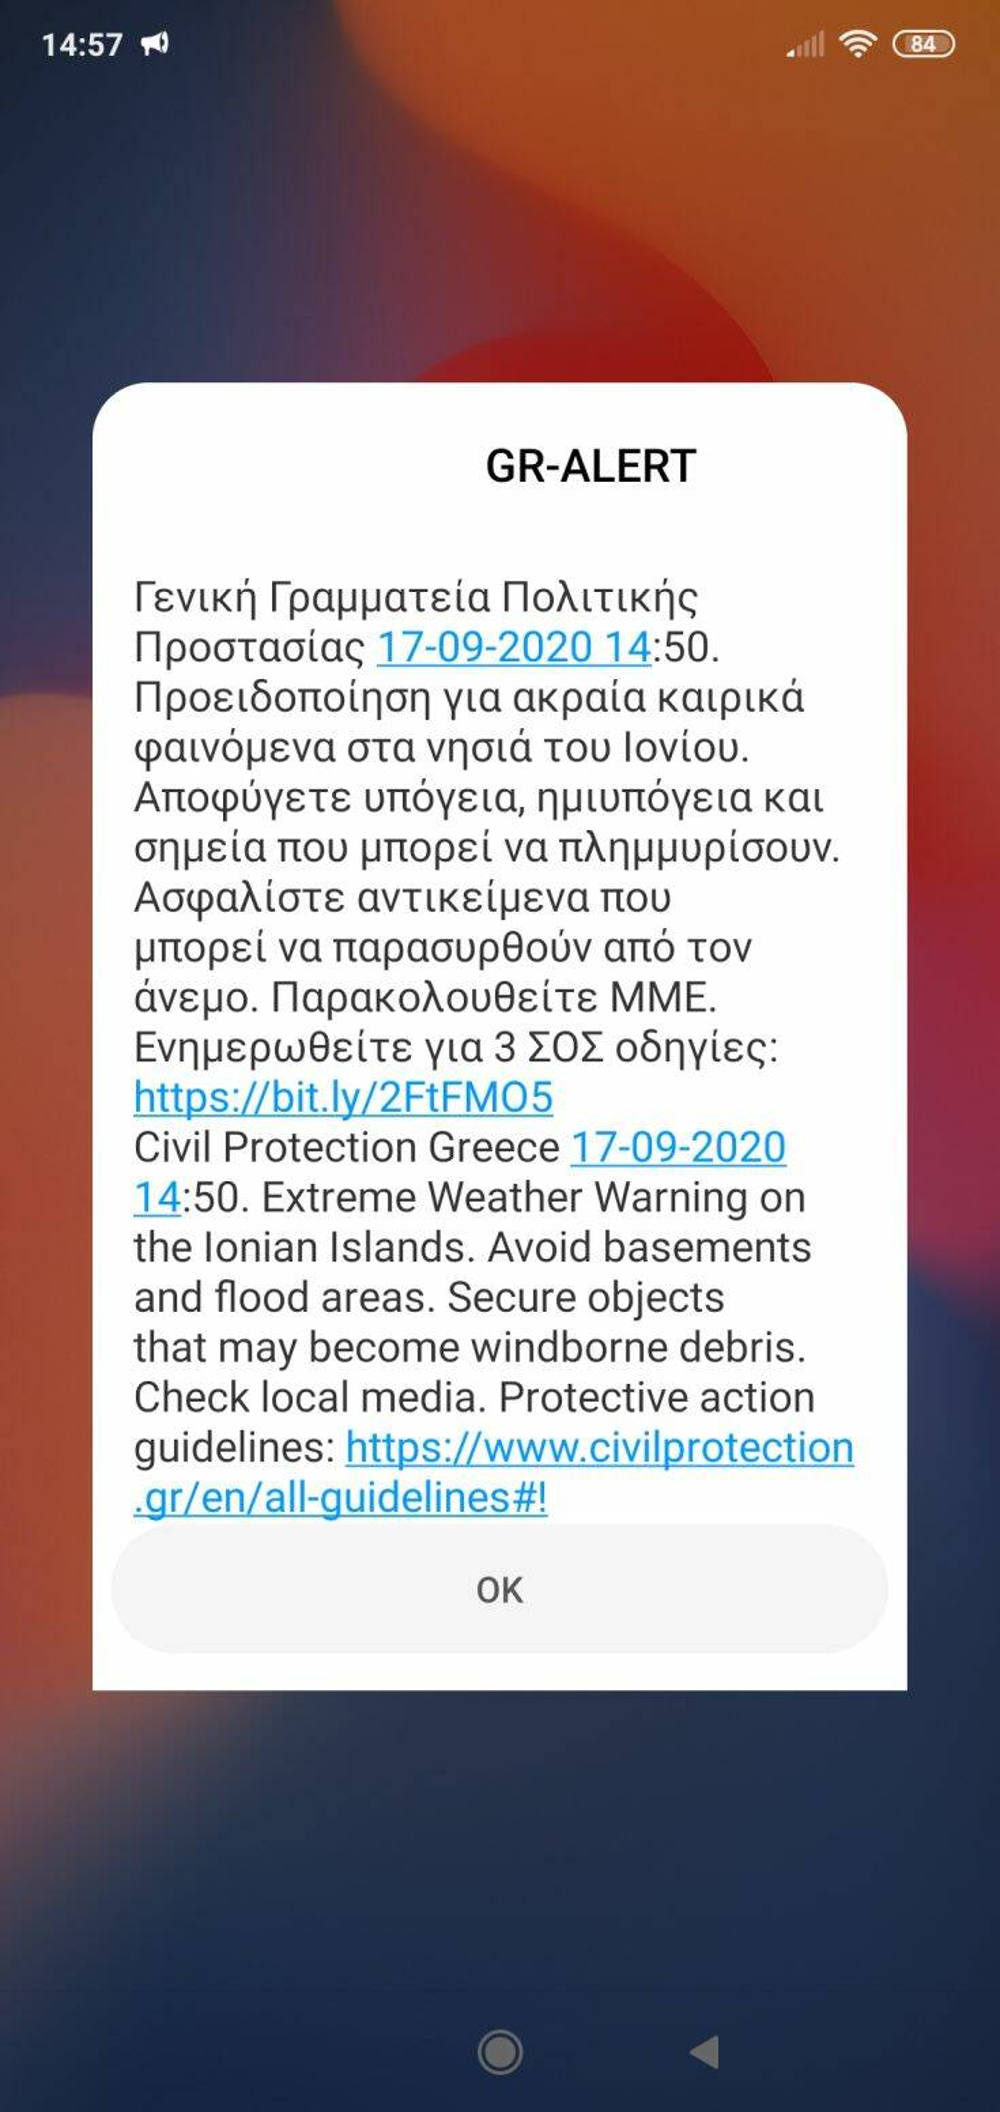 Κακοκαιρία «Ιανός»: Χτυπά την Ελλάδα ο κυκλώνας - Δείτε live εικόνα - ΕΛΛΑΔΑ